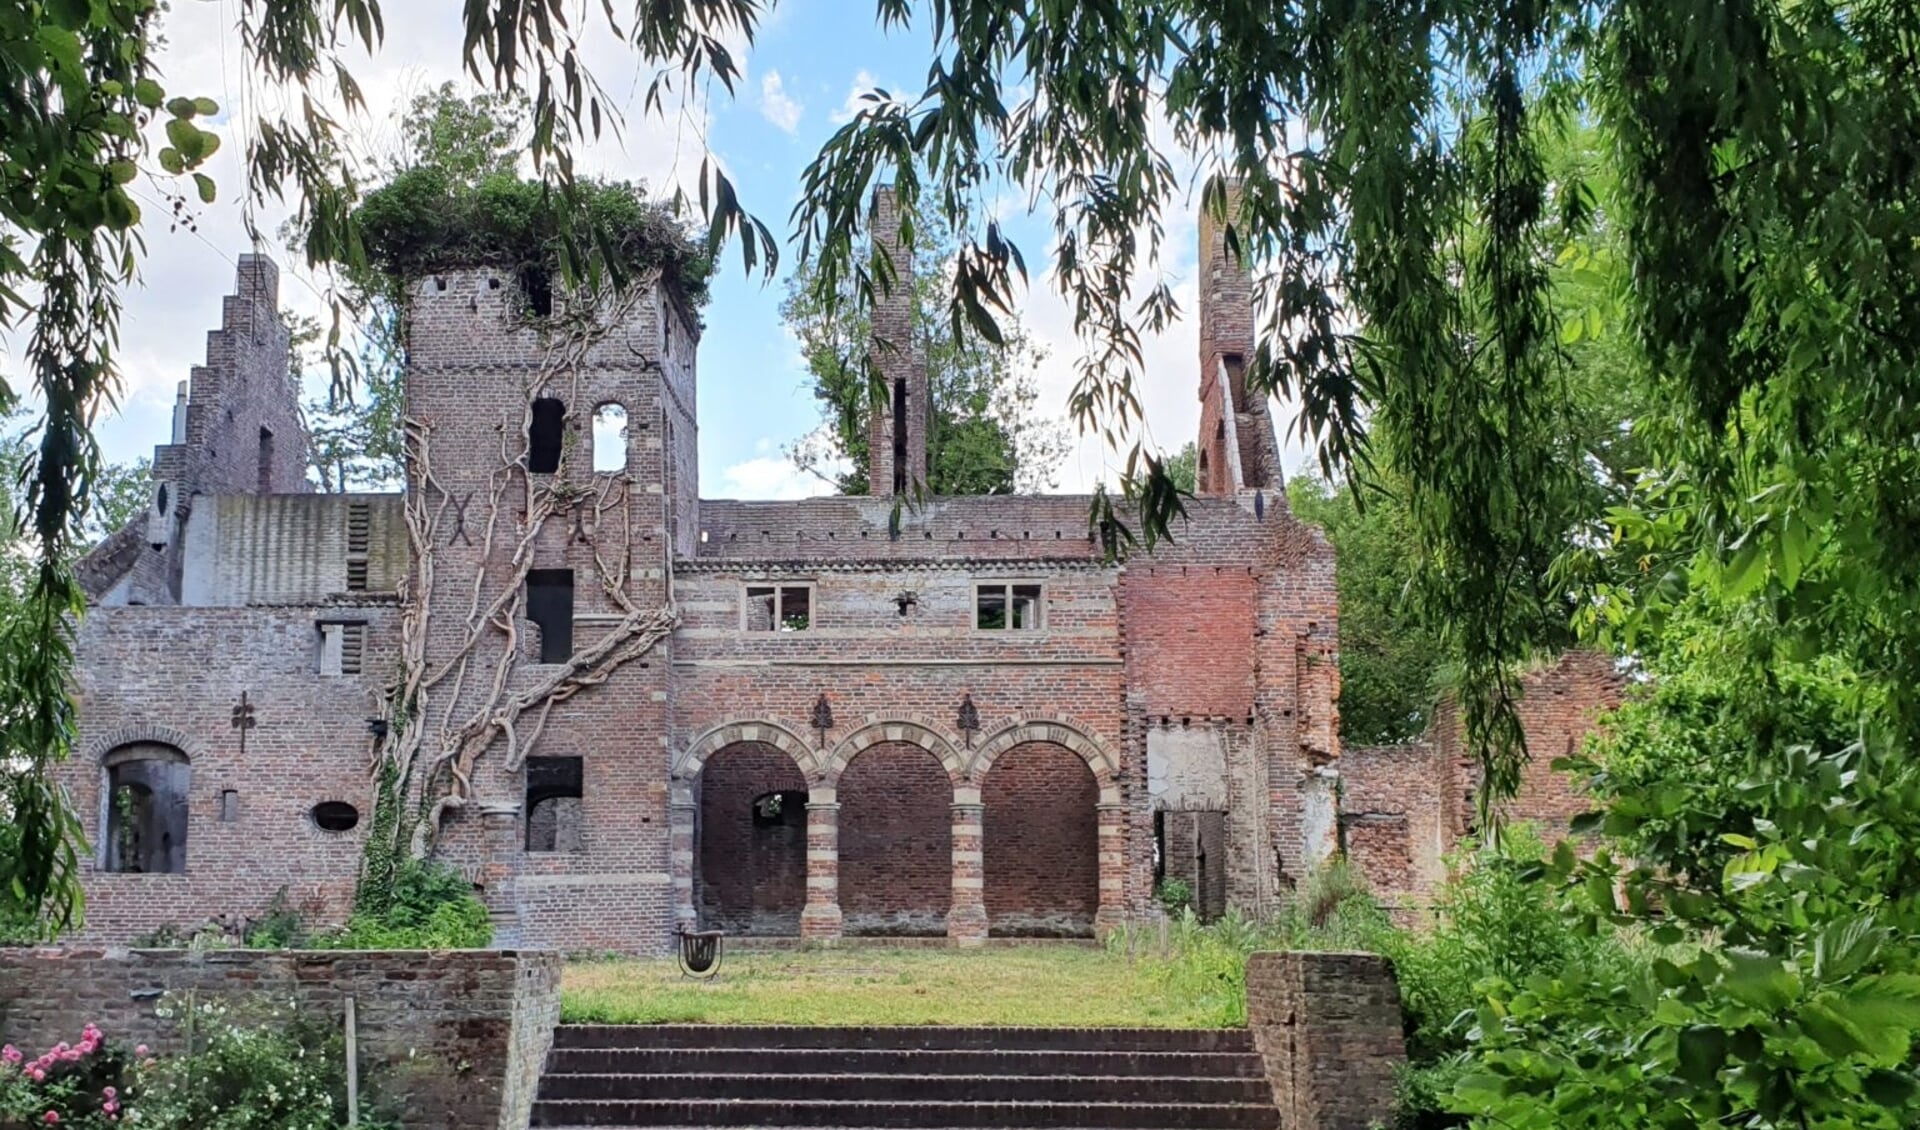 De ruïne van het voormalige Kasteel Asten in Heusden is komende zondag weer te bezichtigen. 